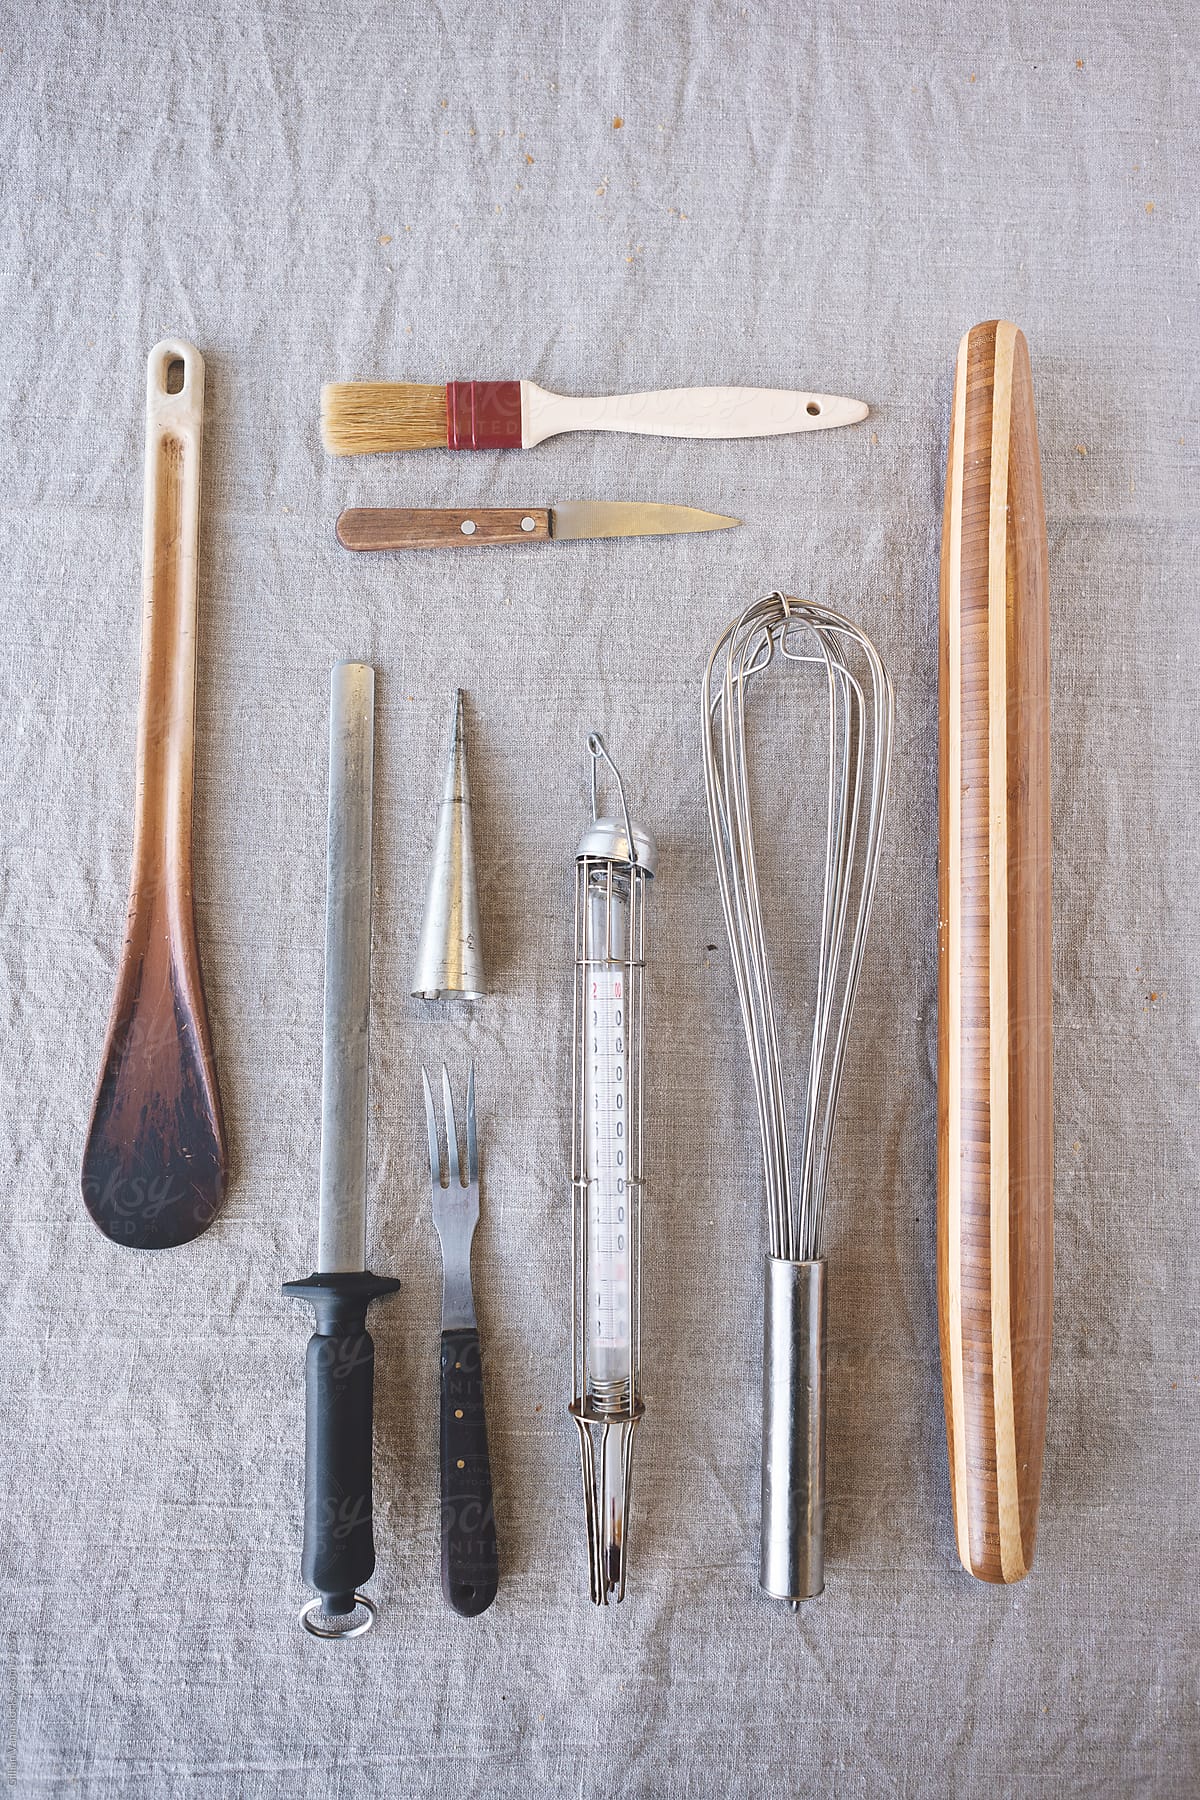 much loved kitchen utensils